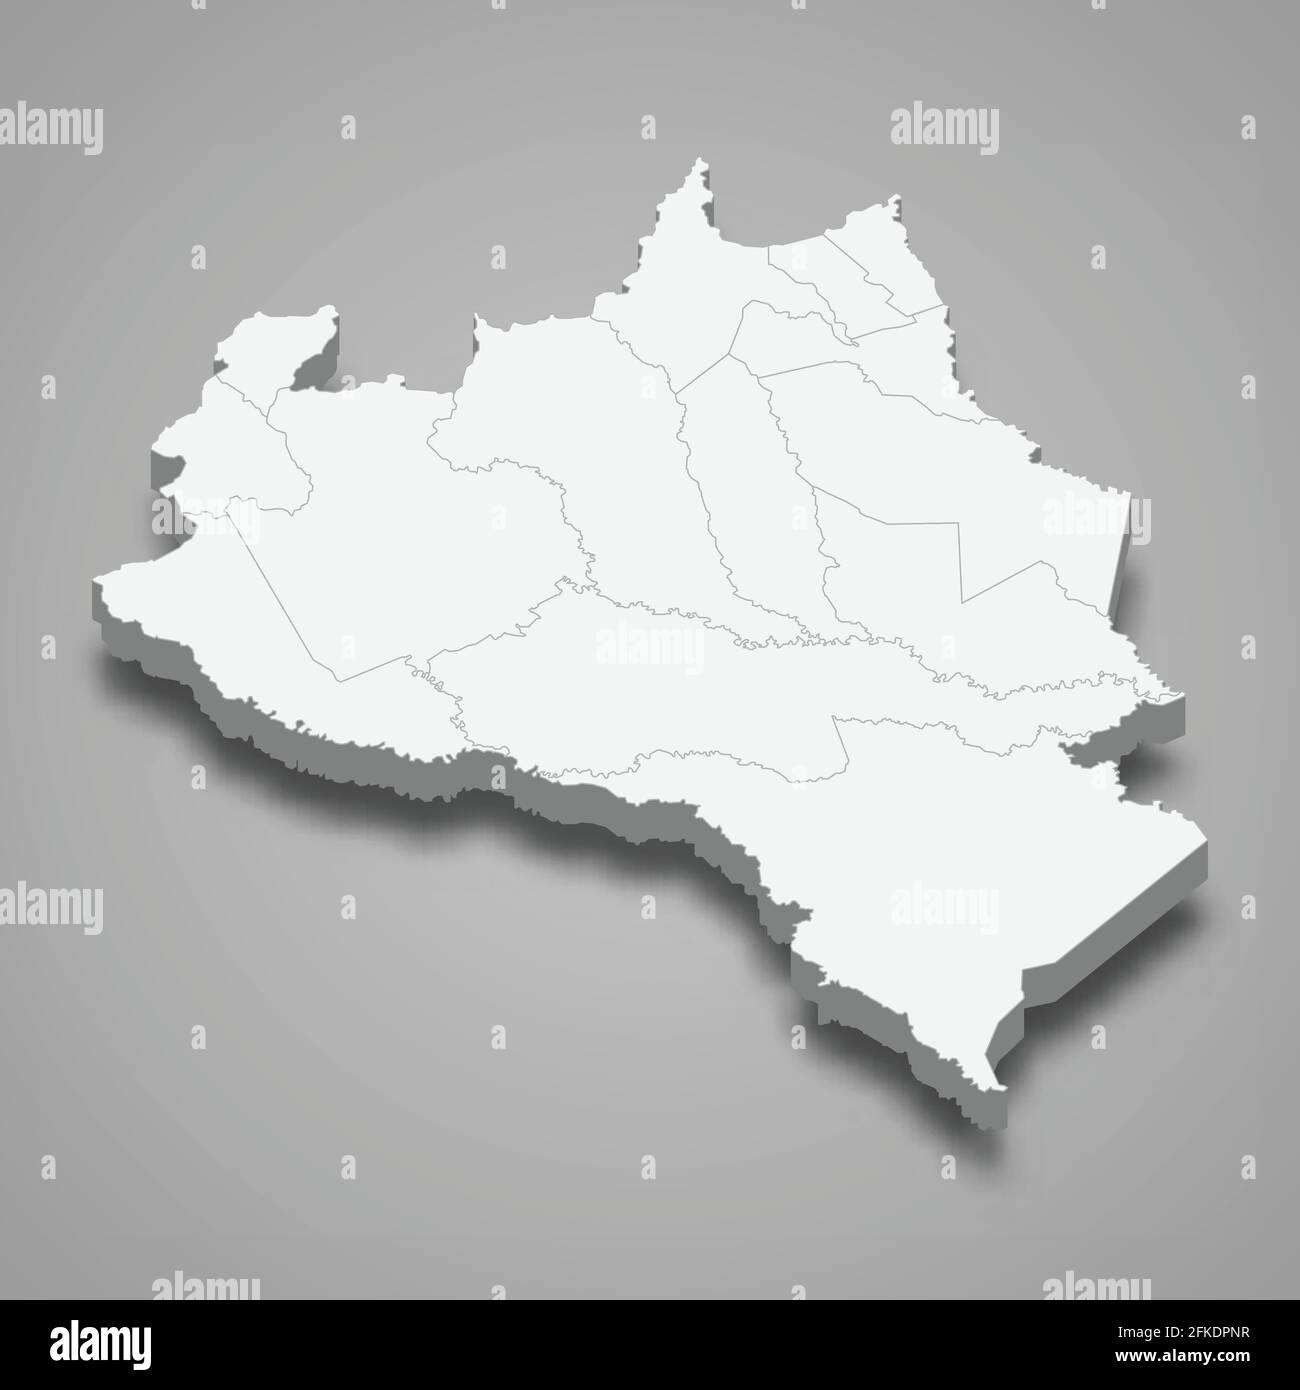 D Mapa Isom Trico De Portuguesa Es Un Estado De Venezuela Ilustraci N